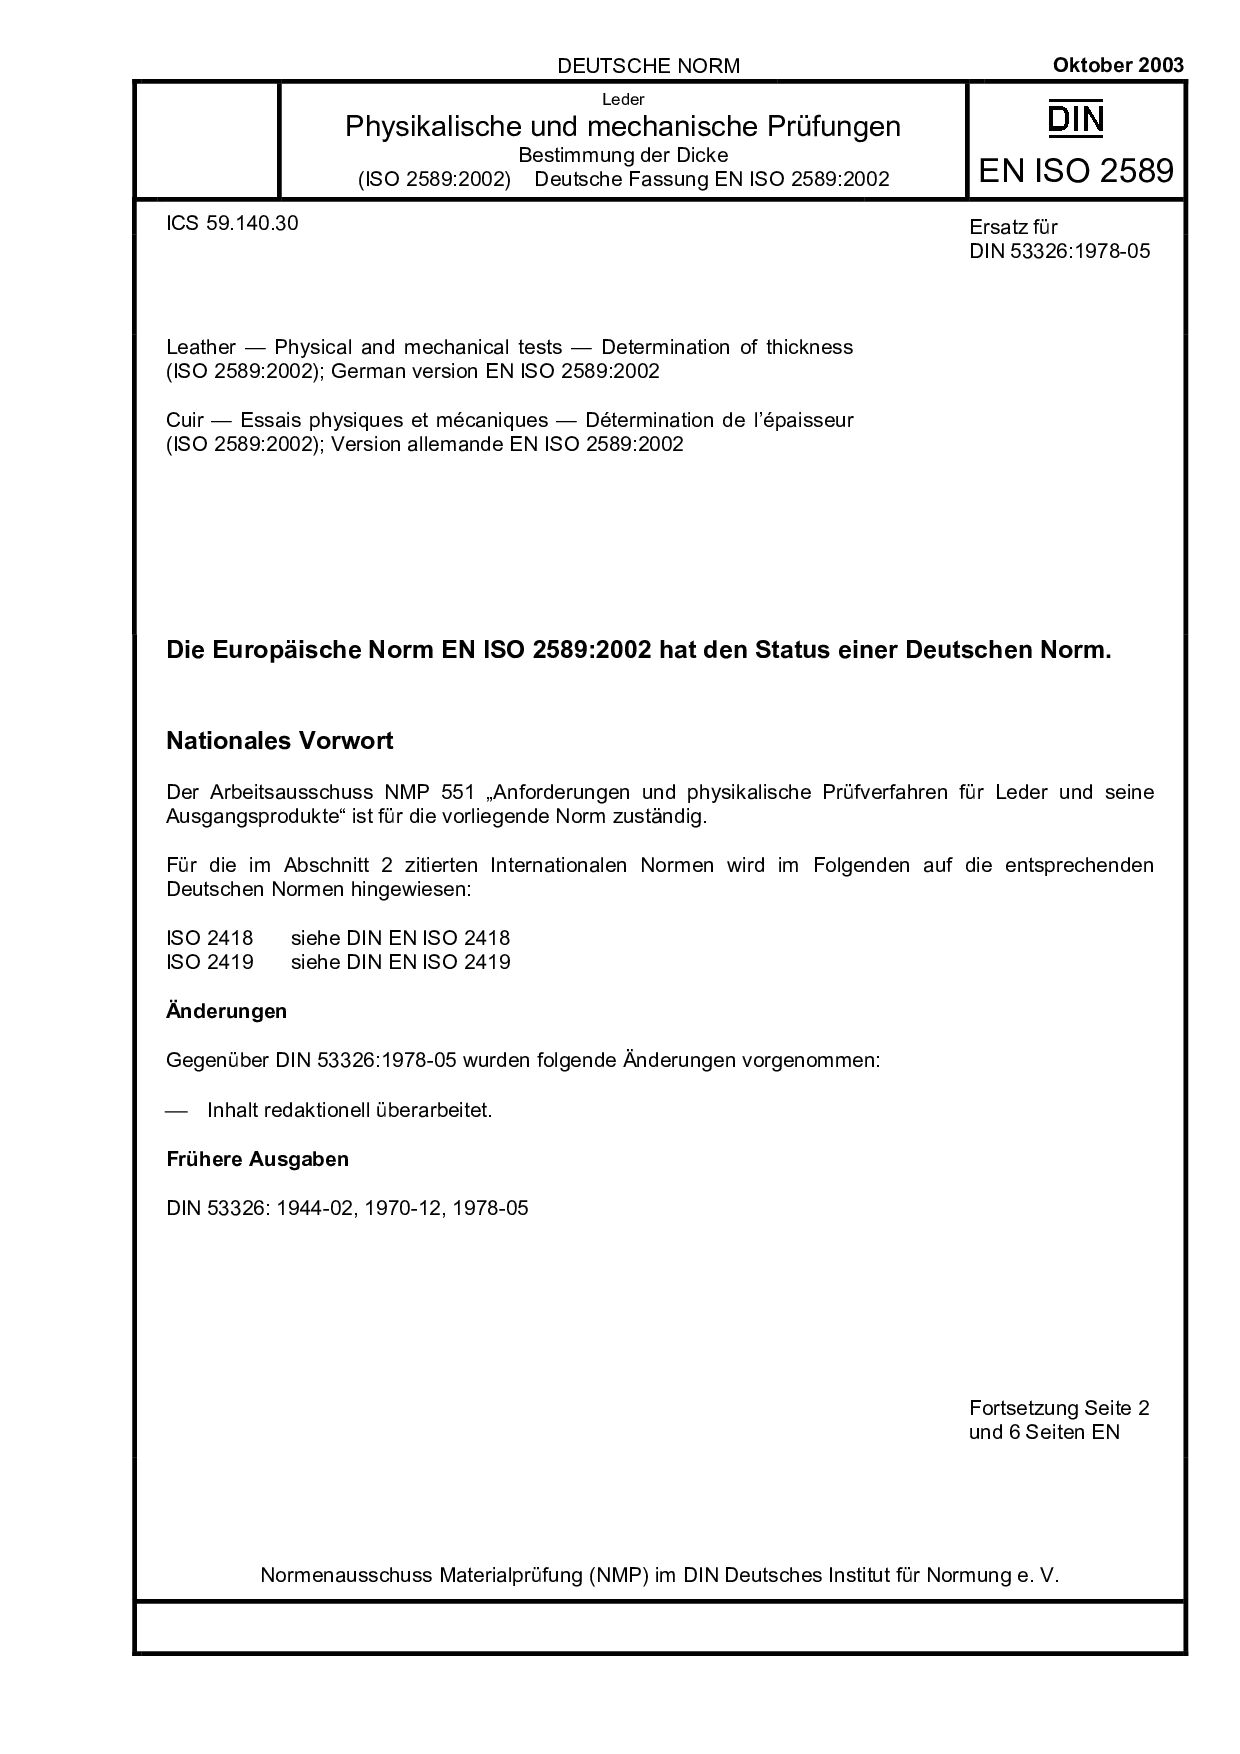 DIN EN ISO 2589:2003